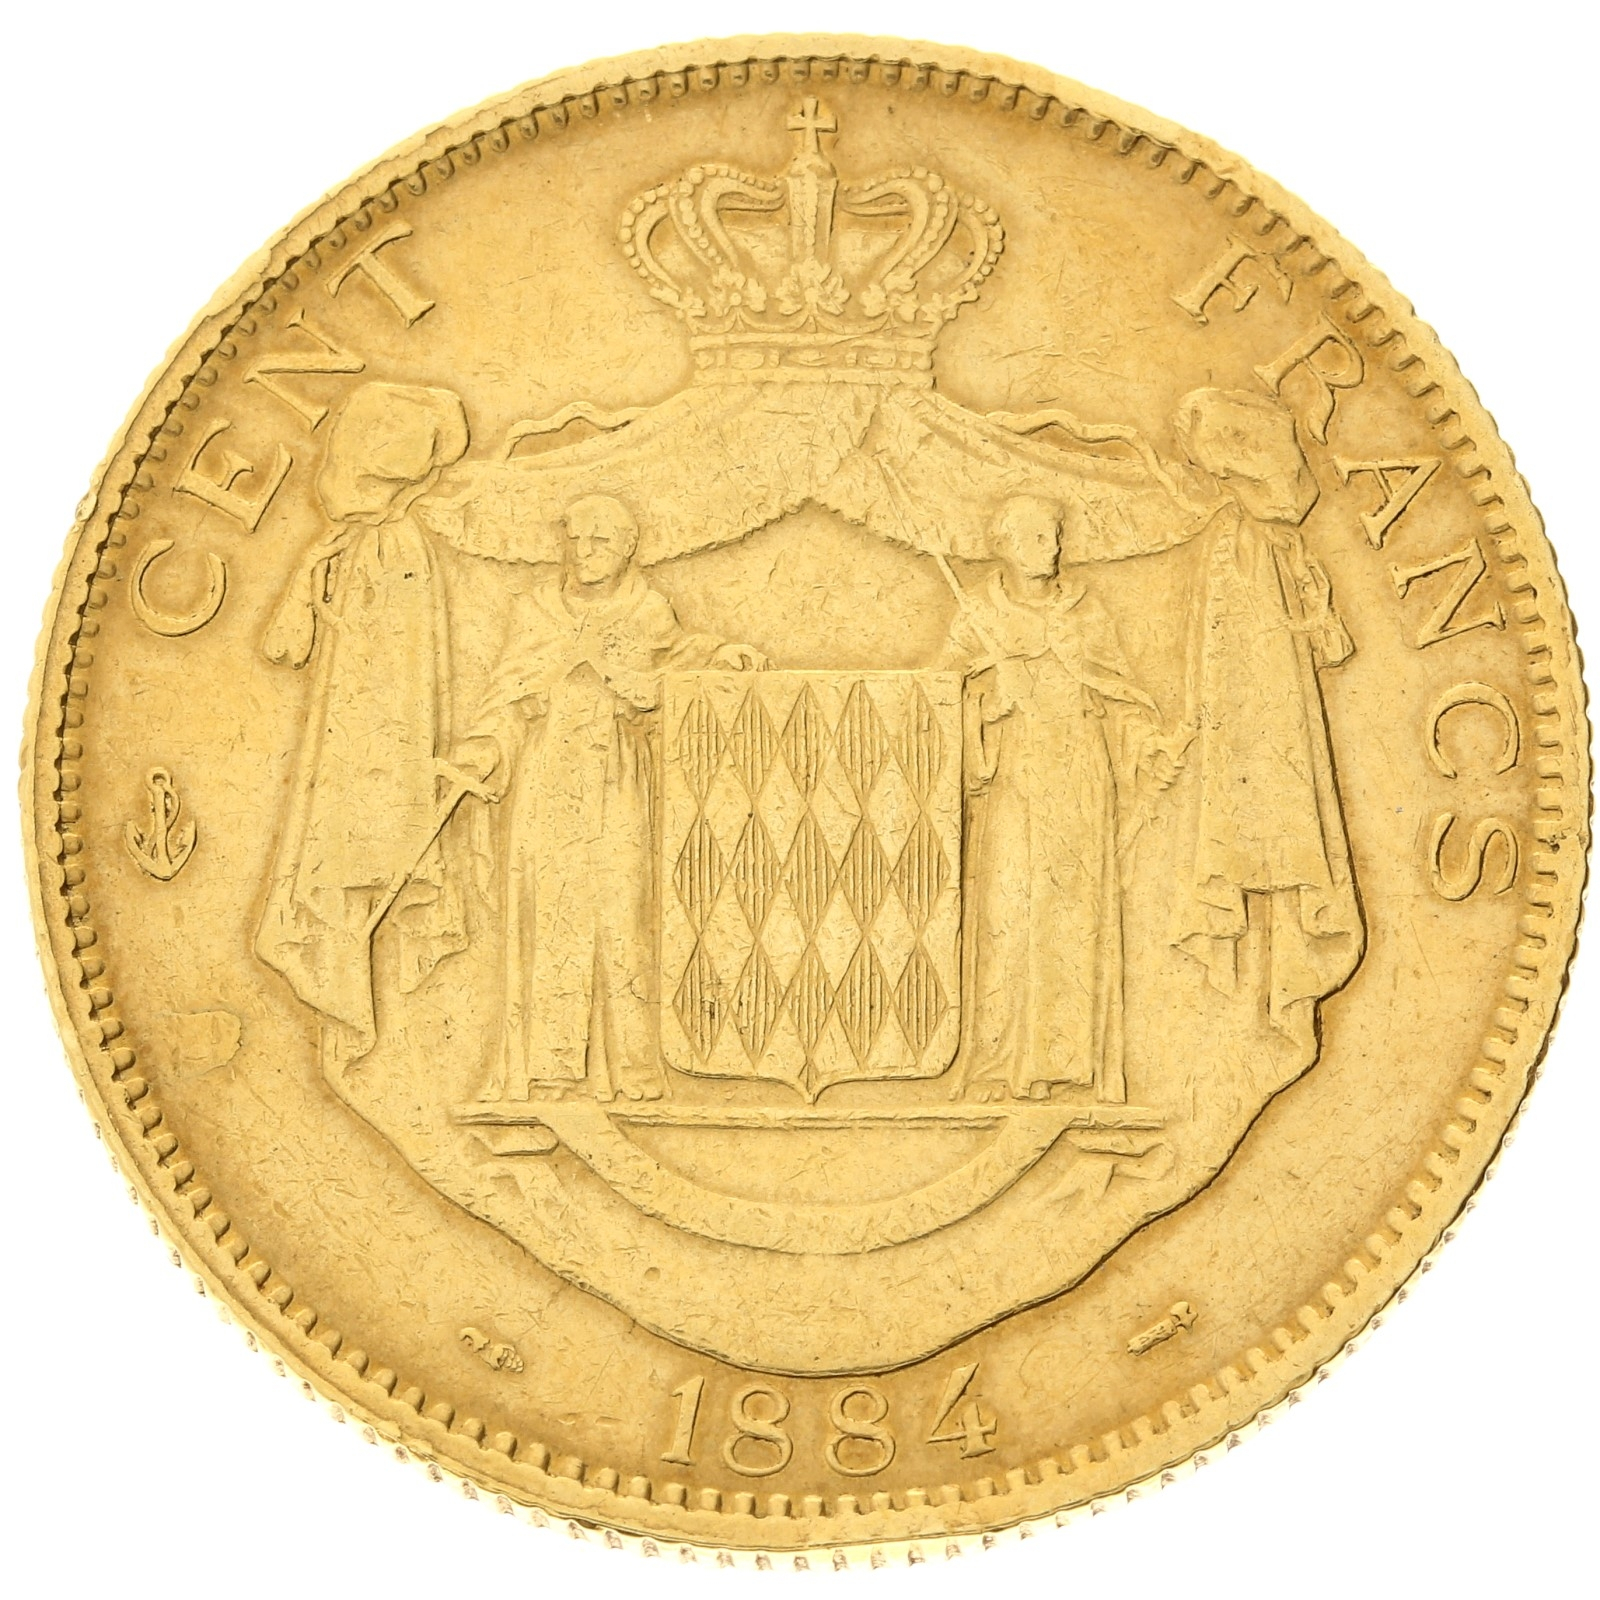 Monaco - 100 francs - 1884 - Charles III